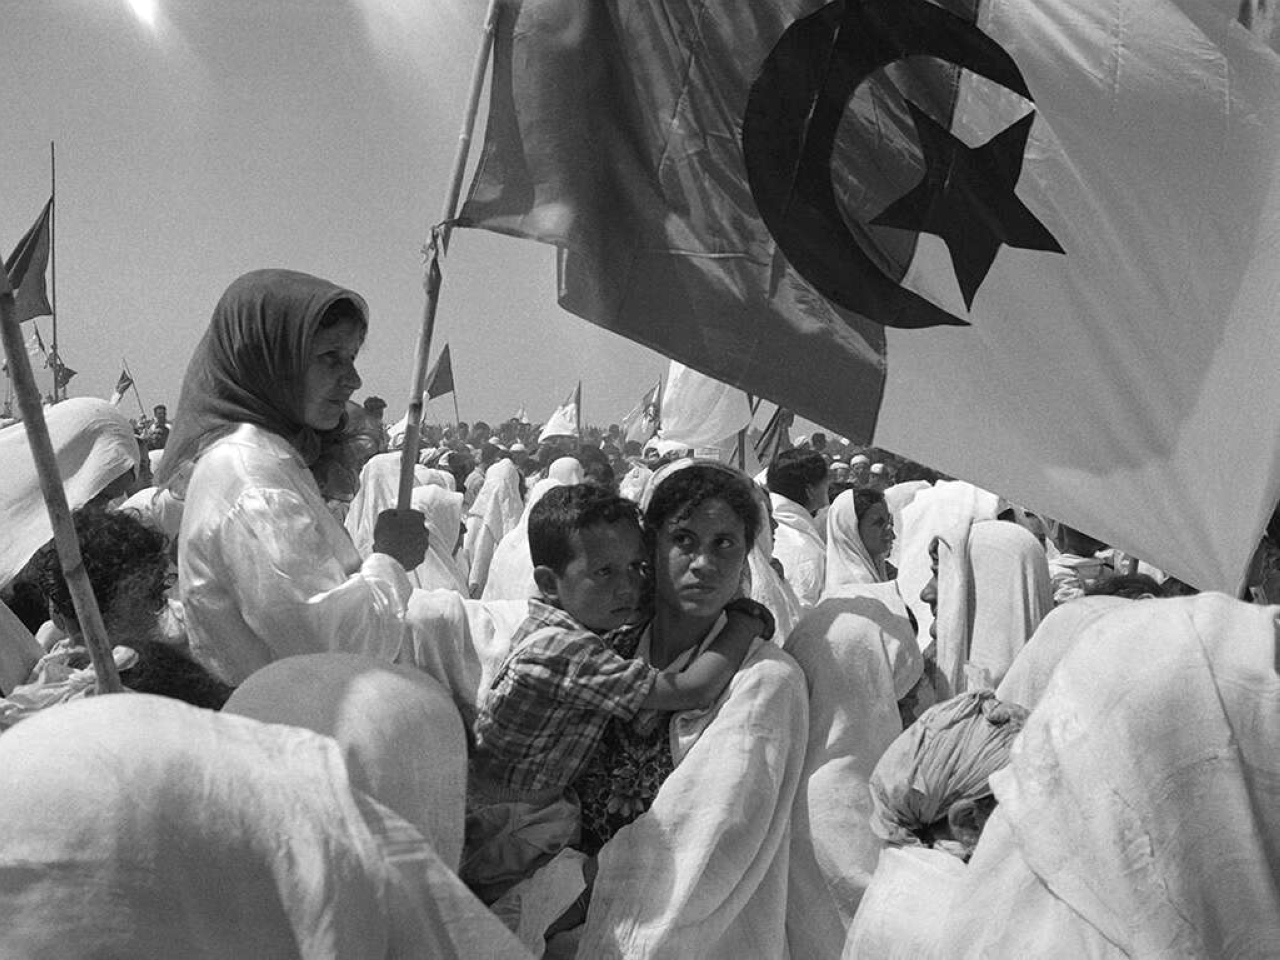 الصورة : 1962 الرئيس الفرنسي شارل ديغول ينادي باستقلال الجزائر بعد استعمار بدأ عام 1830.